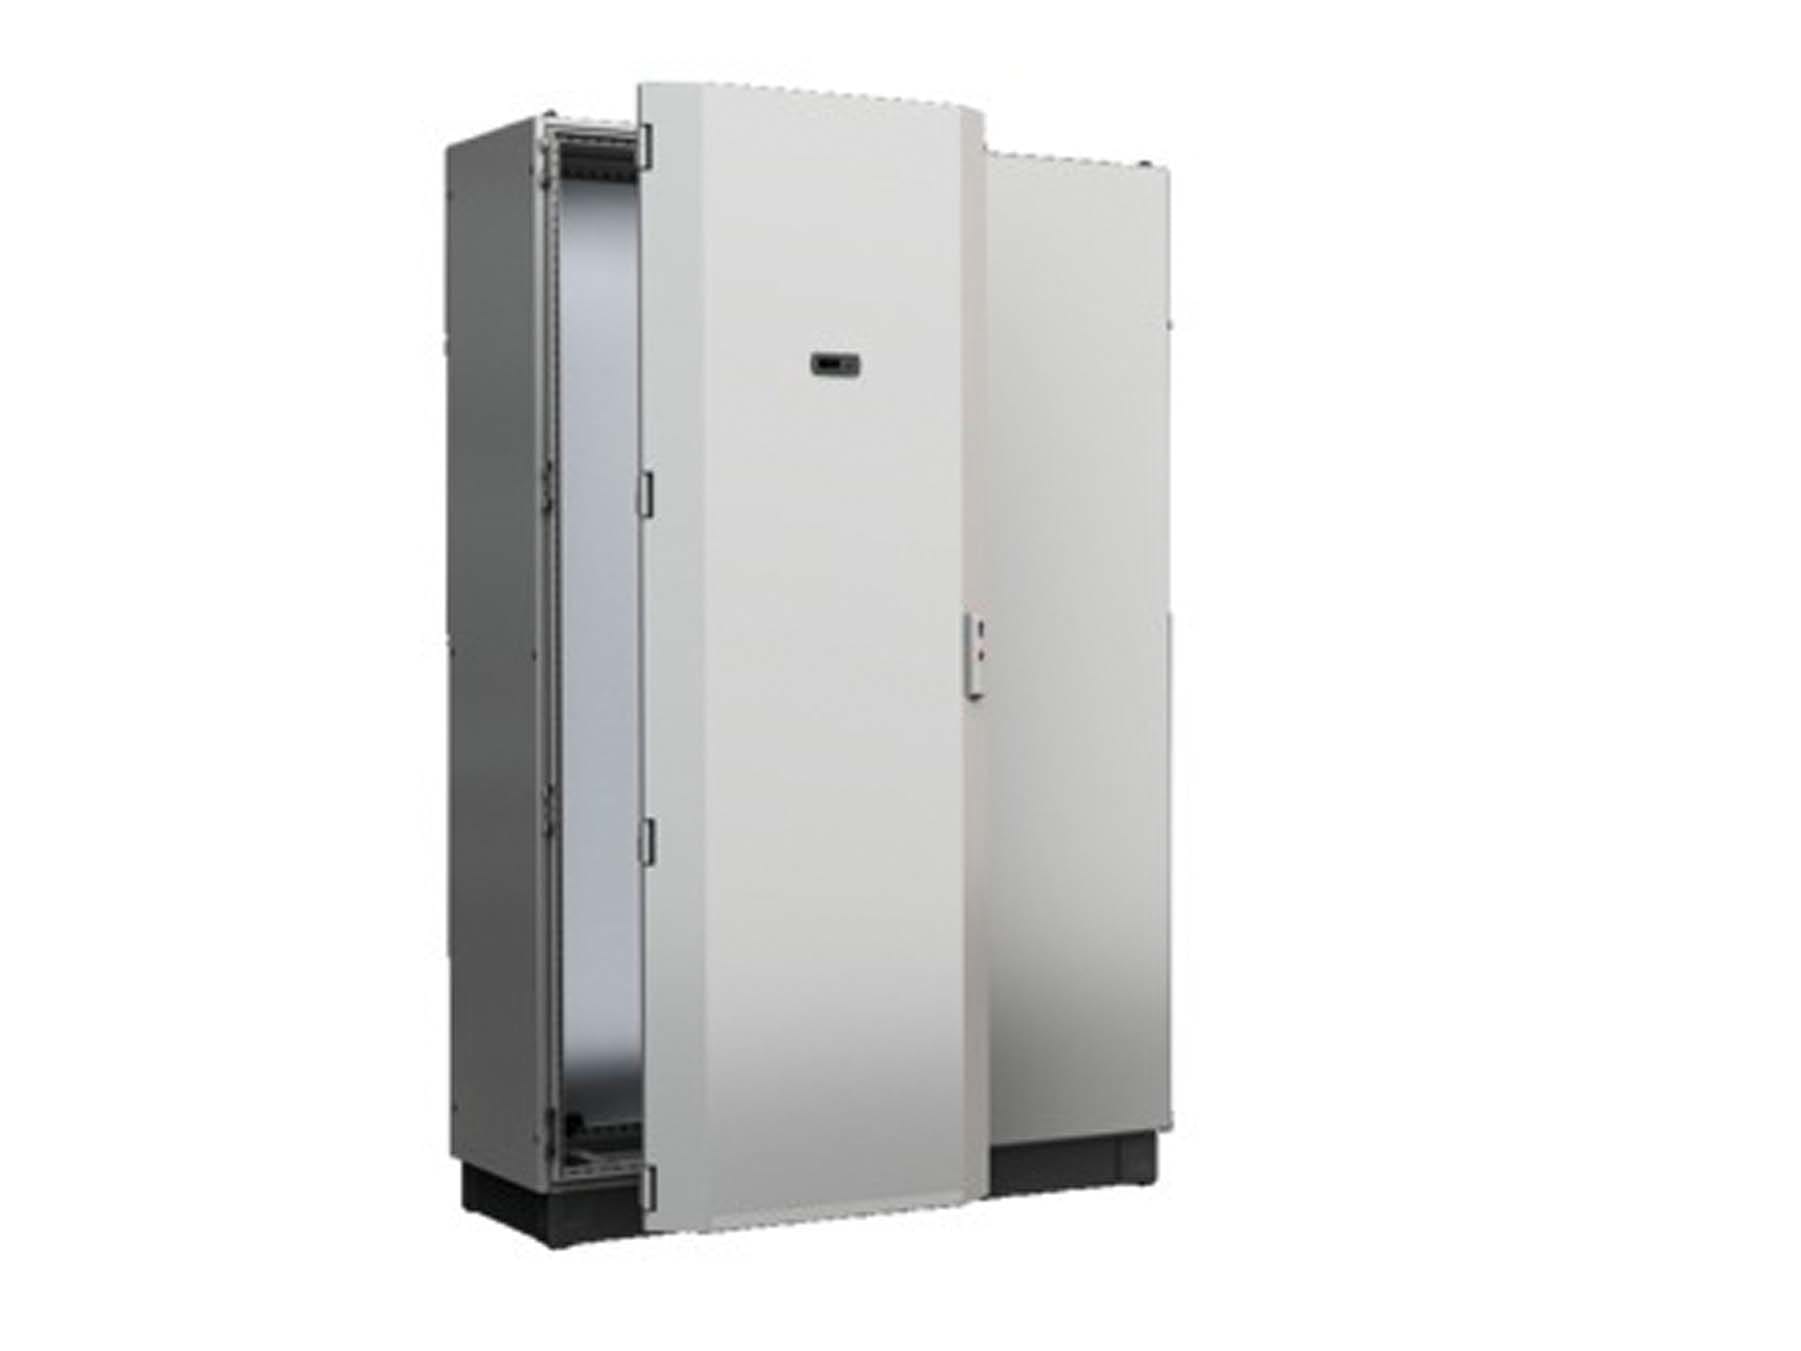 Rittal - Porte climatisée 800x2000 - VX25 - pour le montage de modules de refroidissement